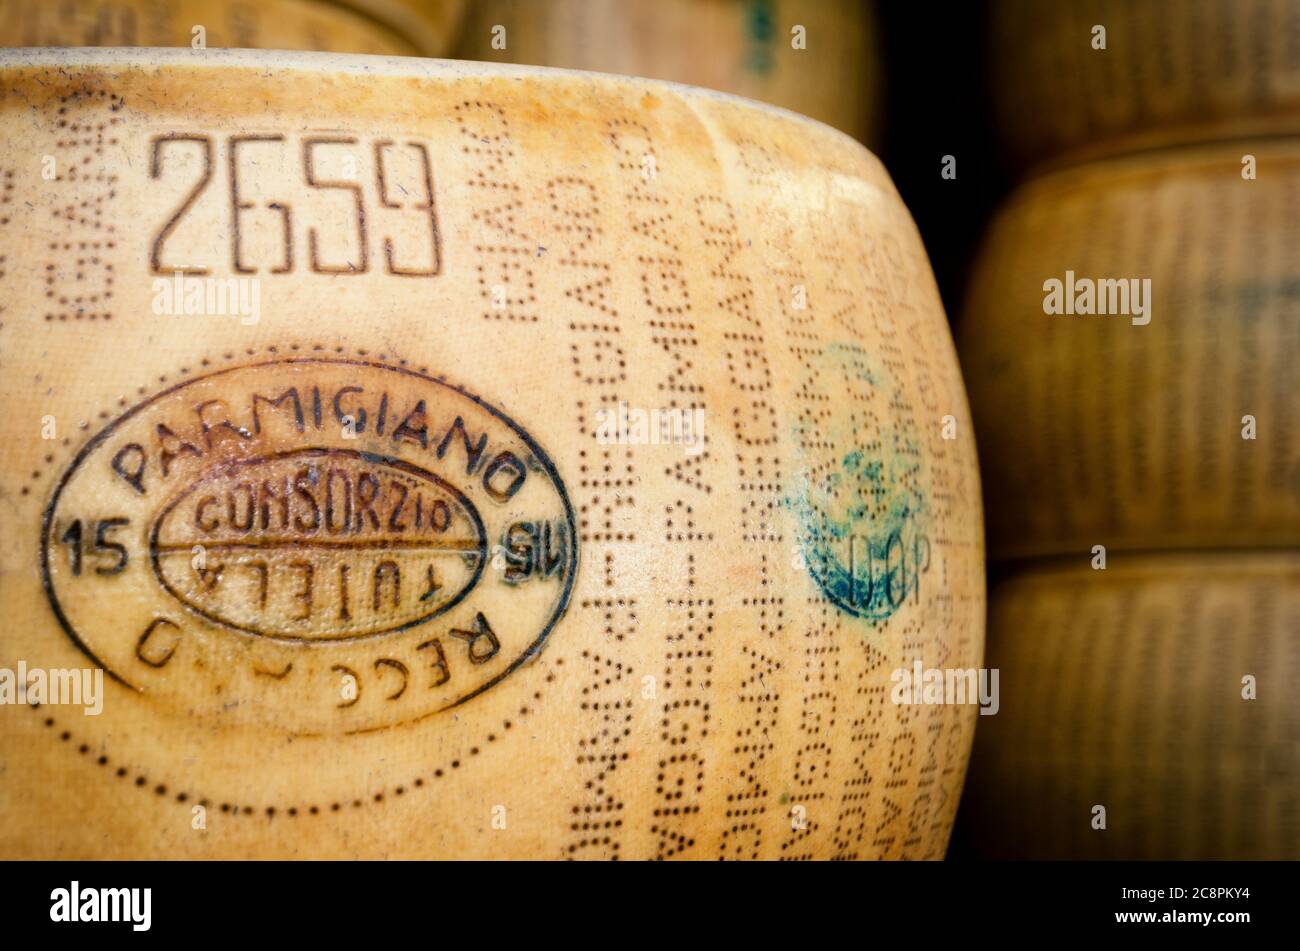 BRA, ITALIEN - 18. SEPTEMBER 2017: Viele Parmiggiano Reggiano (typisch italienischer Käse) Räder zusammen gestapelt in Bra (Piemont, Italien) am 18. september, Stockfoto